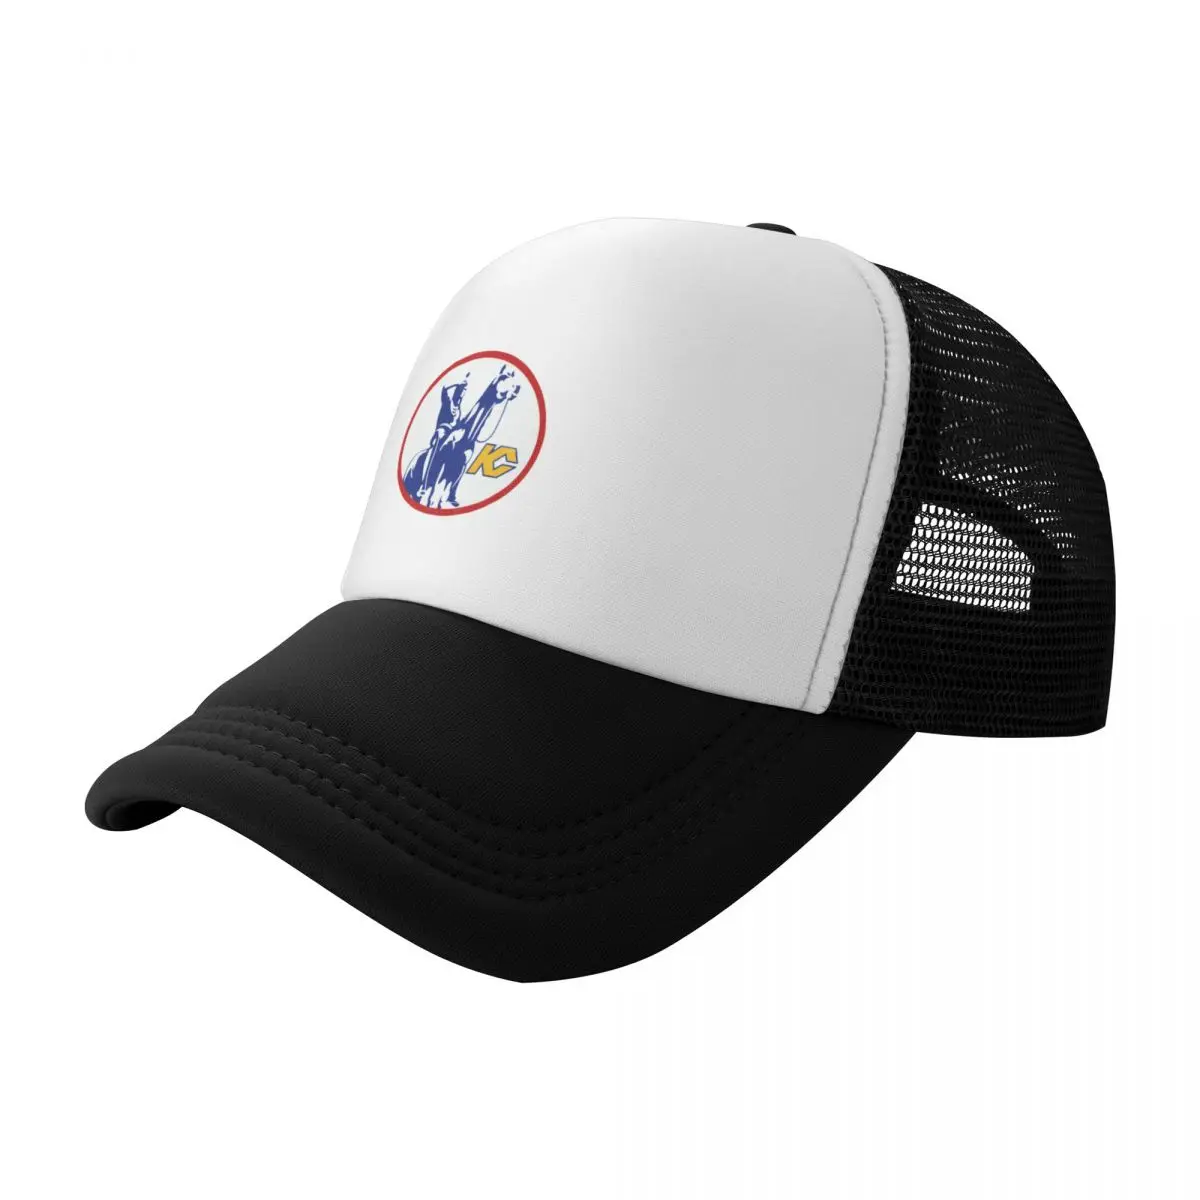 

Kansas City Scouts Hockey 1974 Vintage Logo Baseball Cap Trucker Hat fishing hat dad hat Golf Wear Men Women's